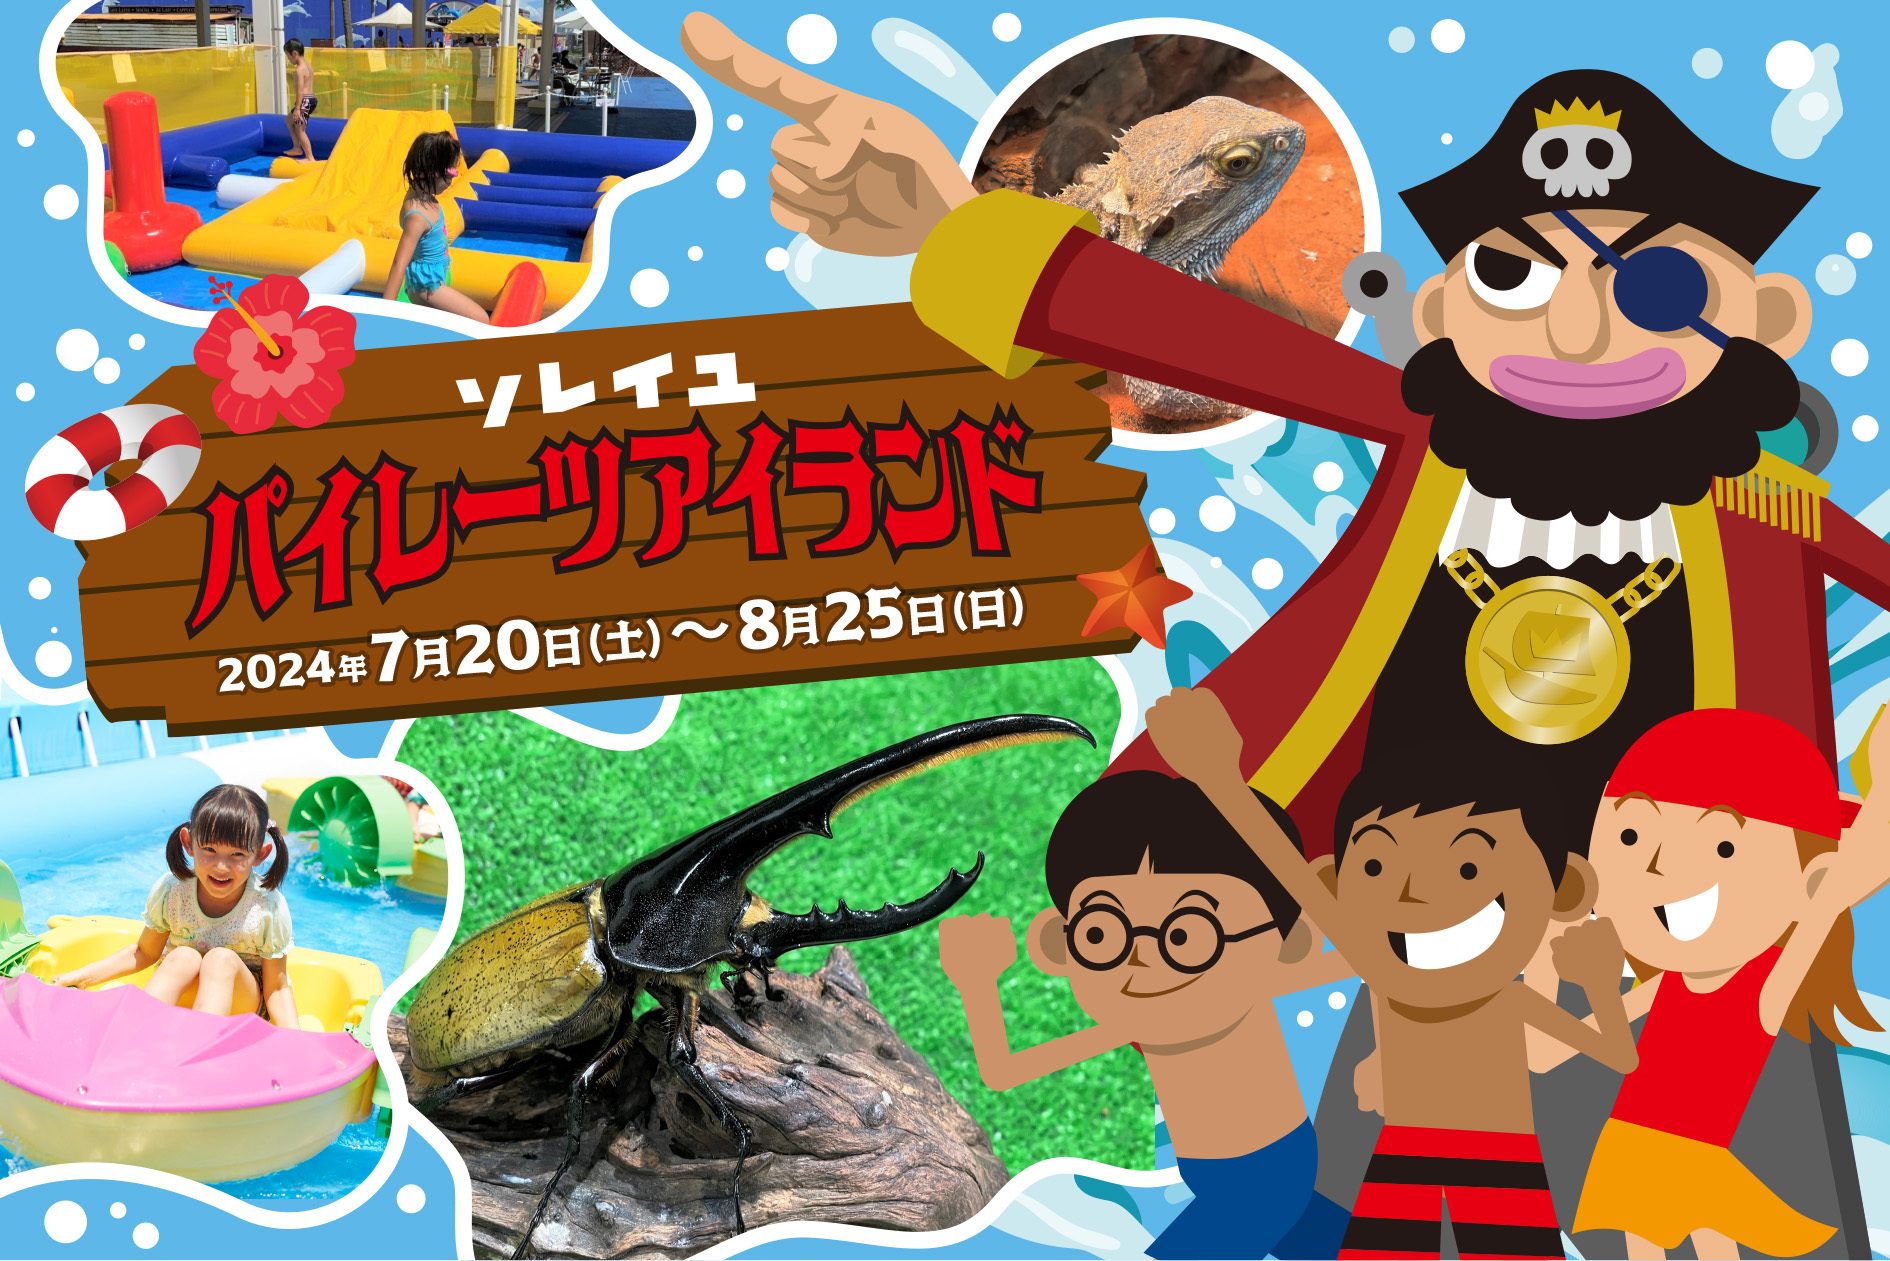 横須賀「長井海の手公園 ソレイユの丘」
夏イベント『ソレイユパイレーツアイランド』が
7月20日(土)から開幕。